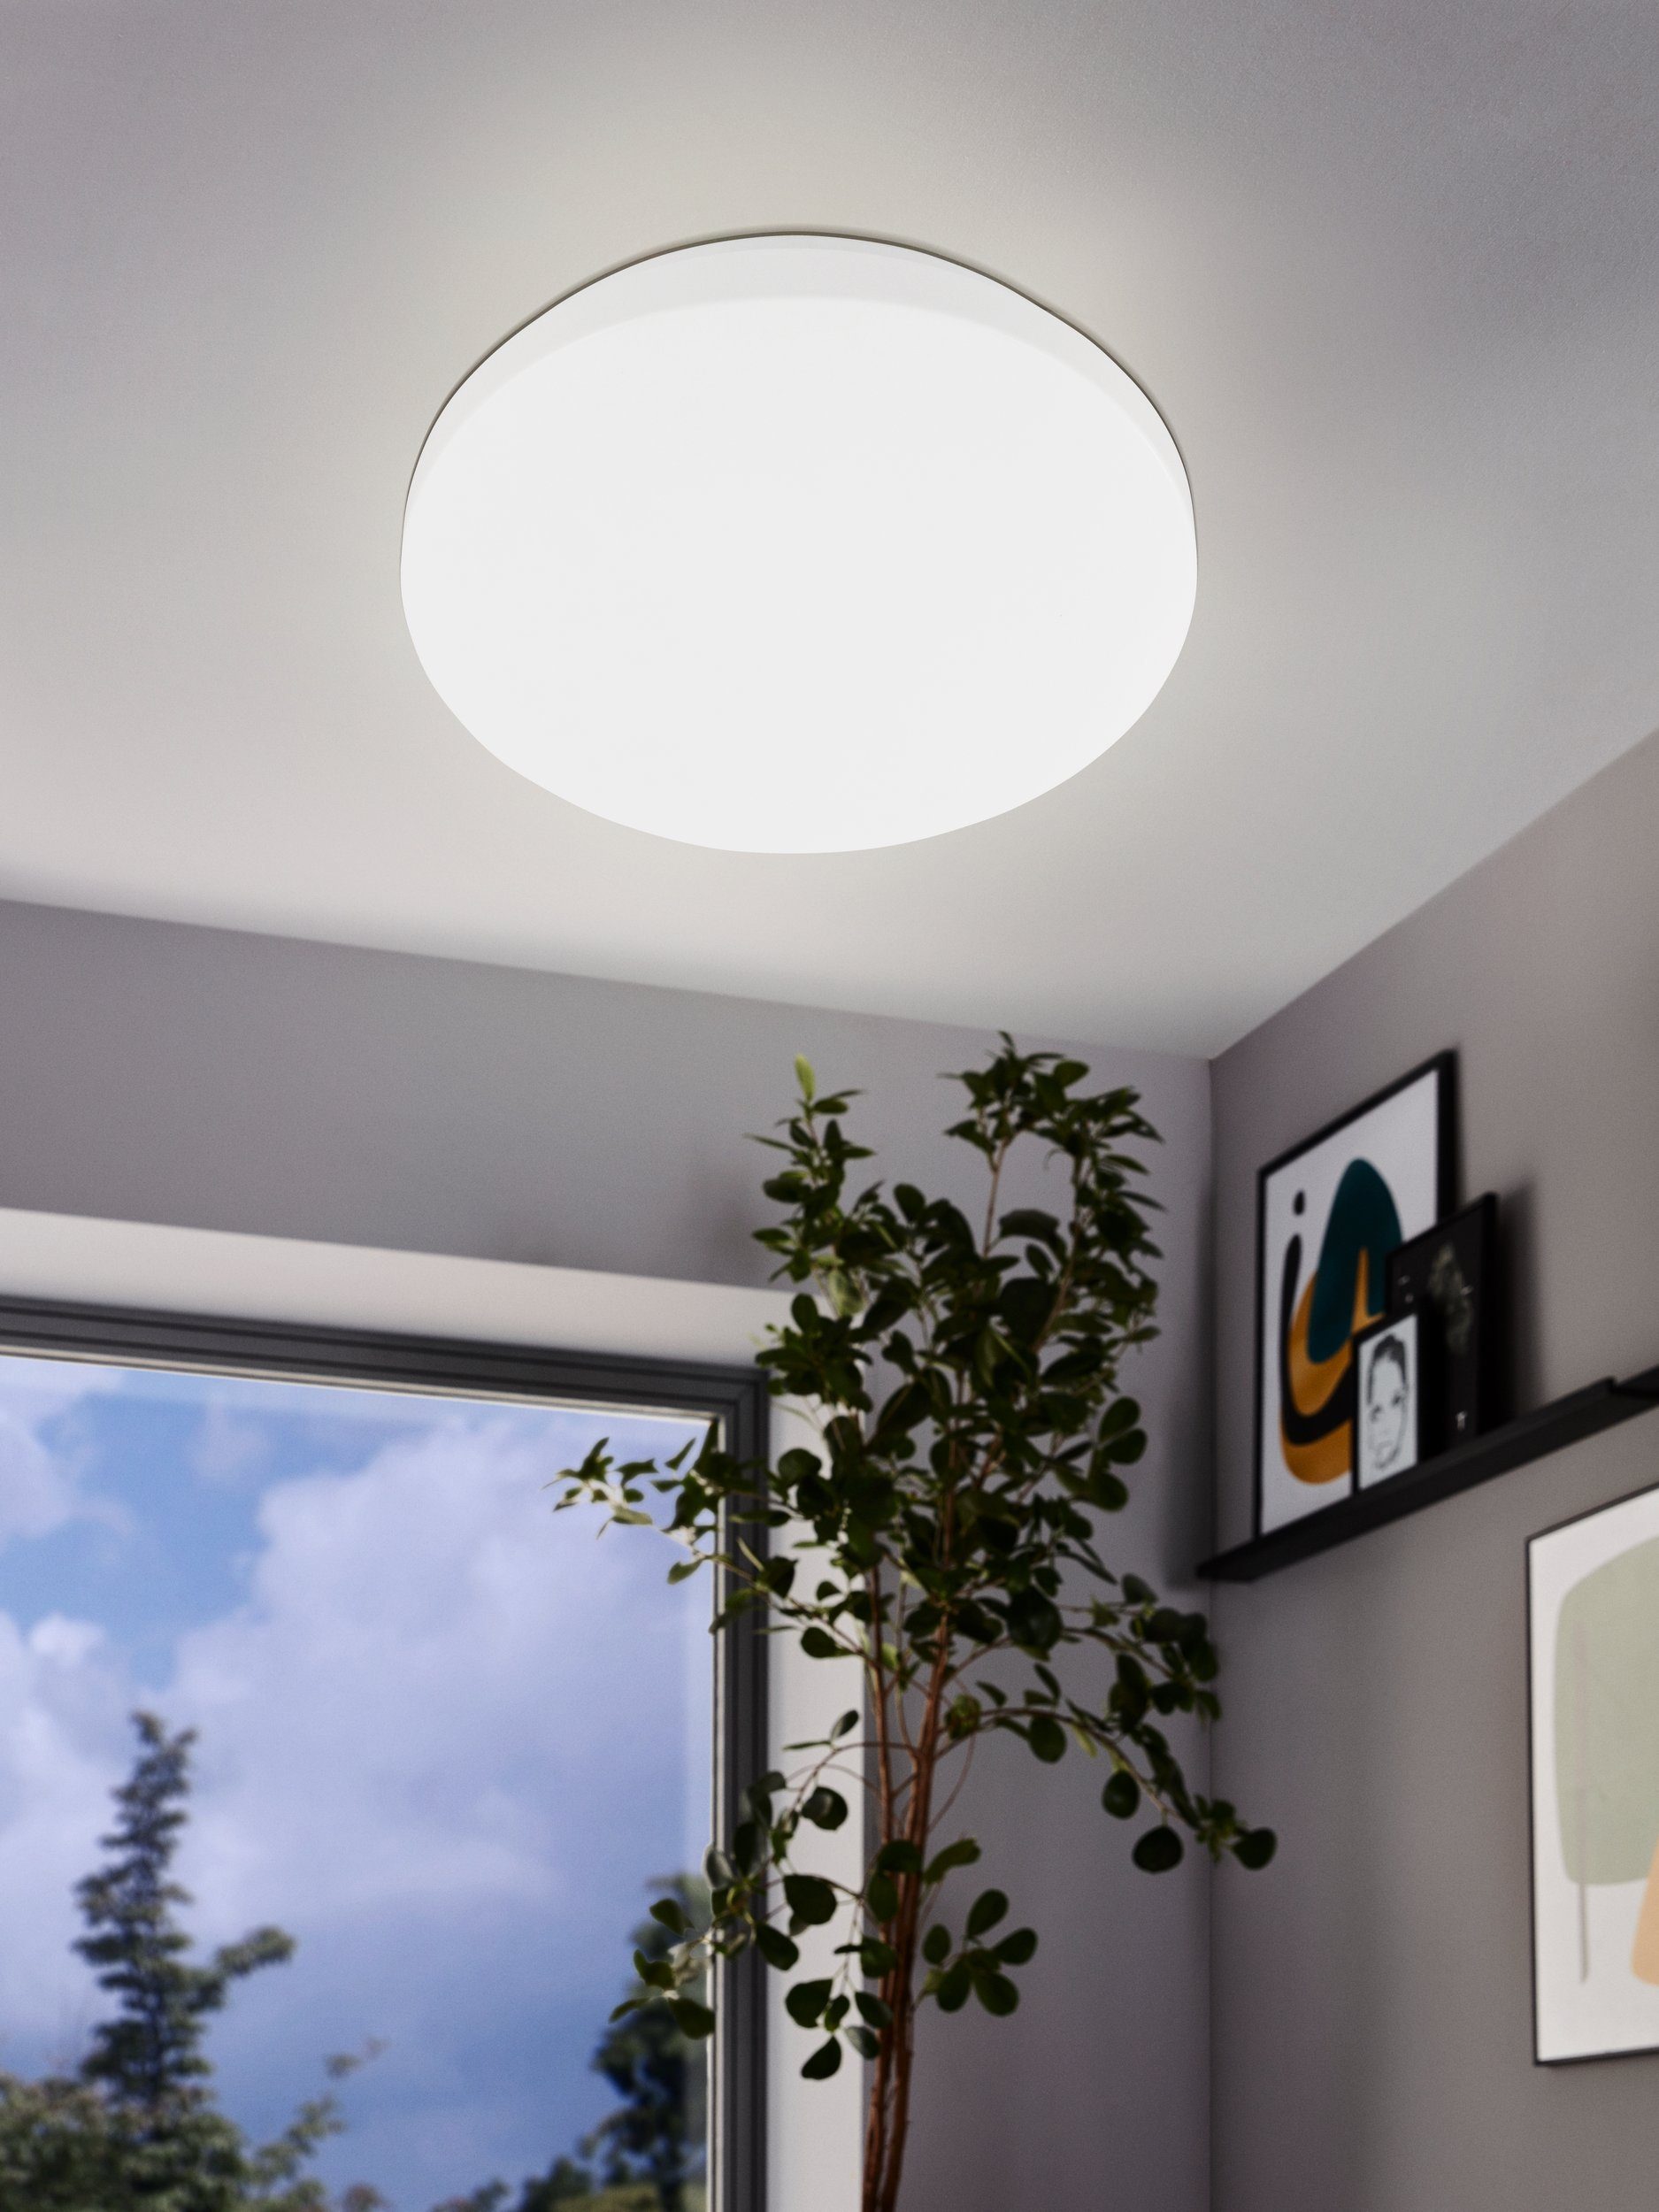 EGLO LED Deckenleuchte Pogliola, Leuchtmittel inklusive, Ø 26 cm,  Wandlampe, LED Deckenleuchte, Wohnzimmerlampe, Küchenlampe